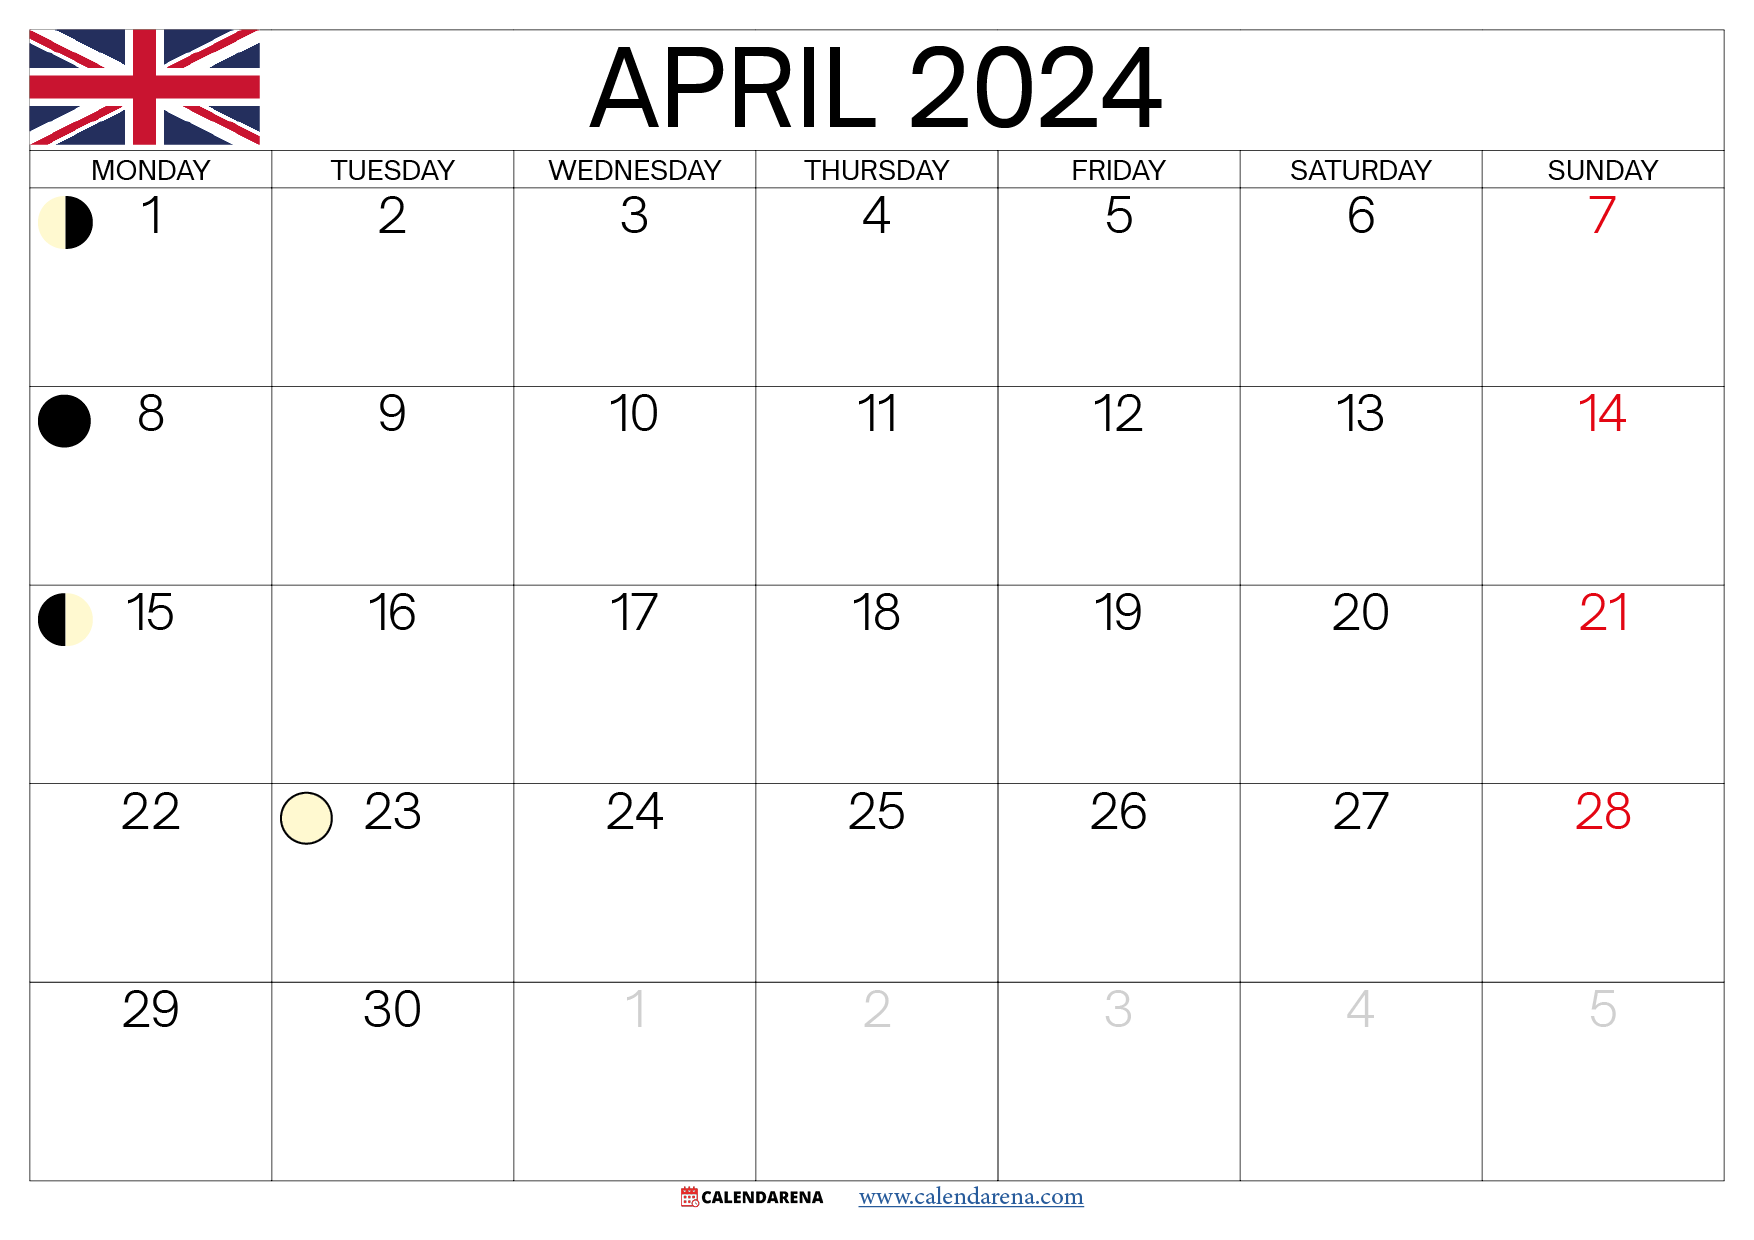 april calendar 2024 uk